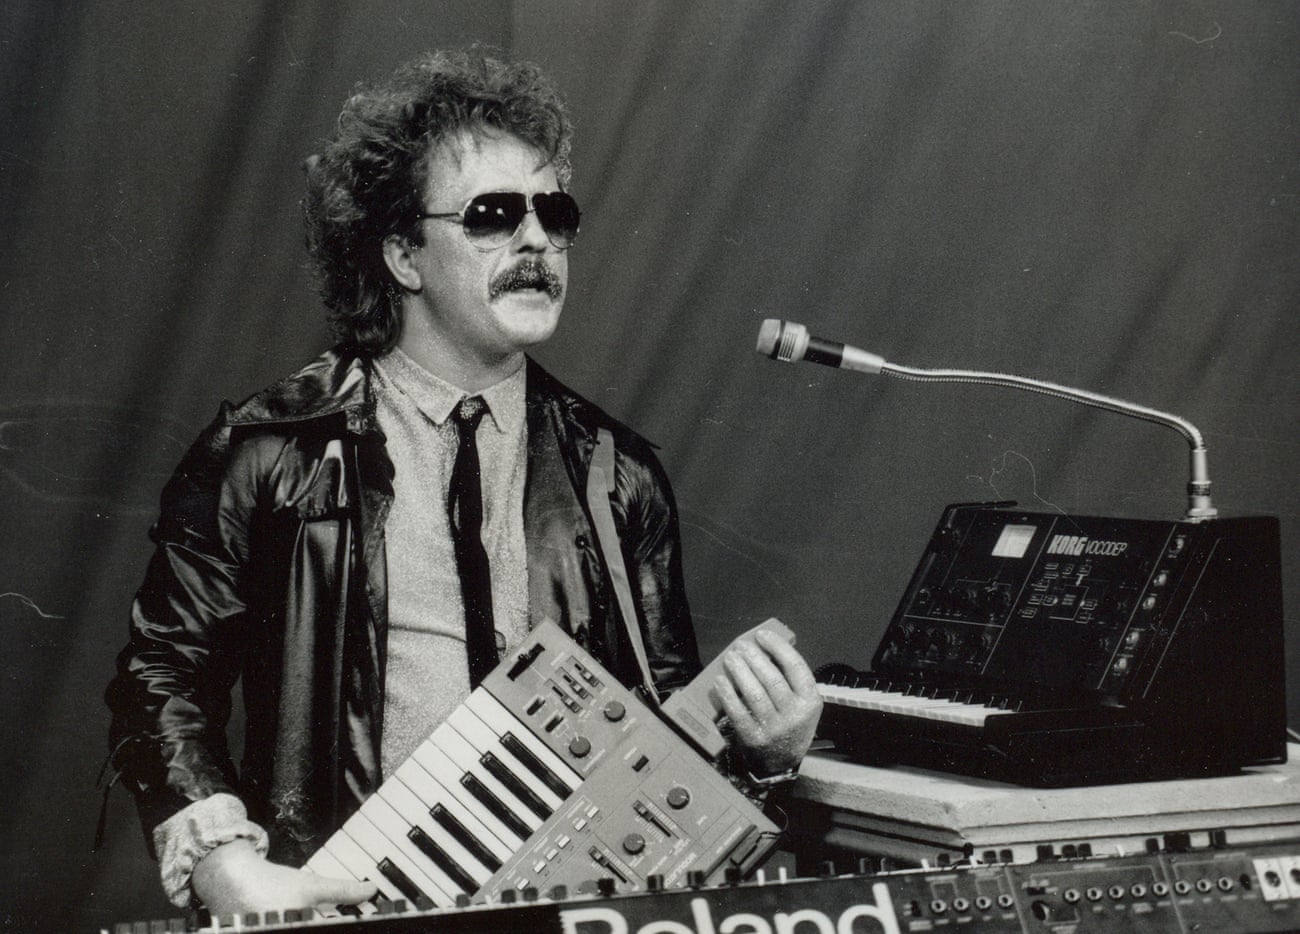 Miha Kralj in 1986.